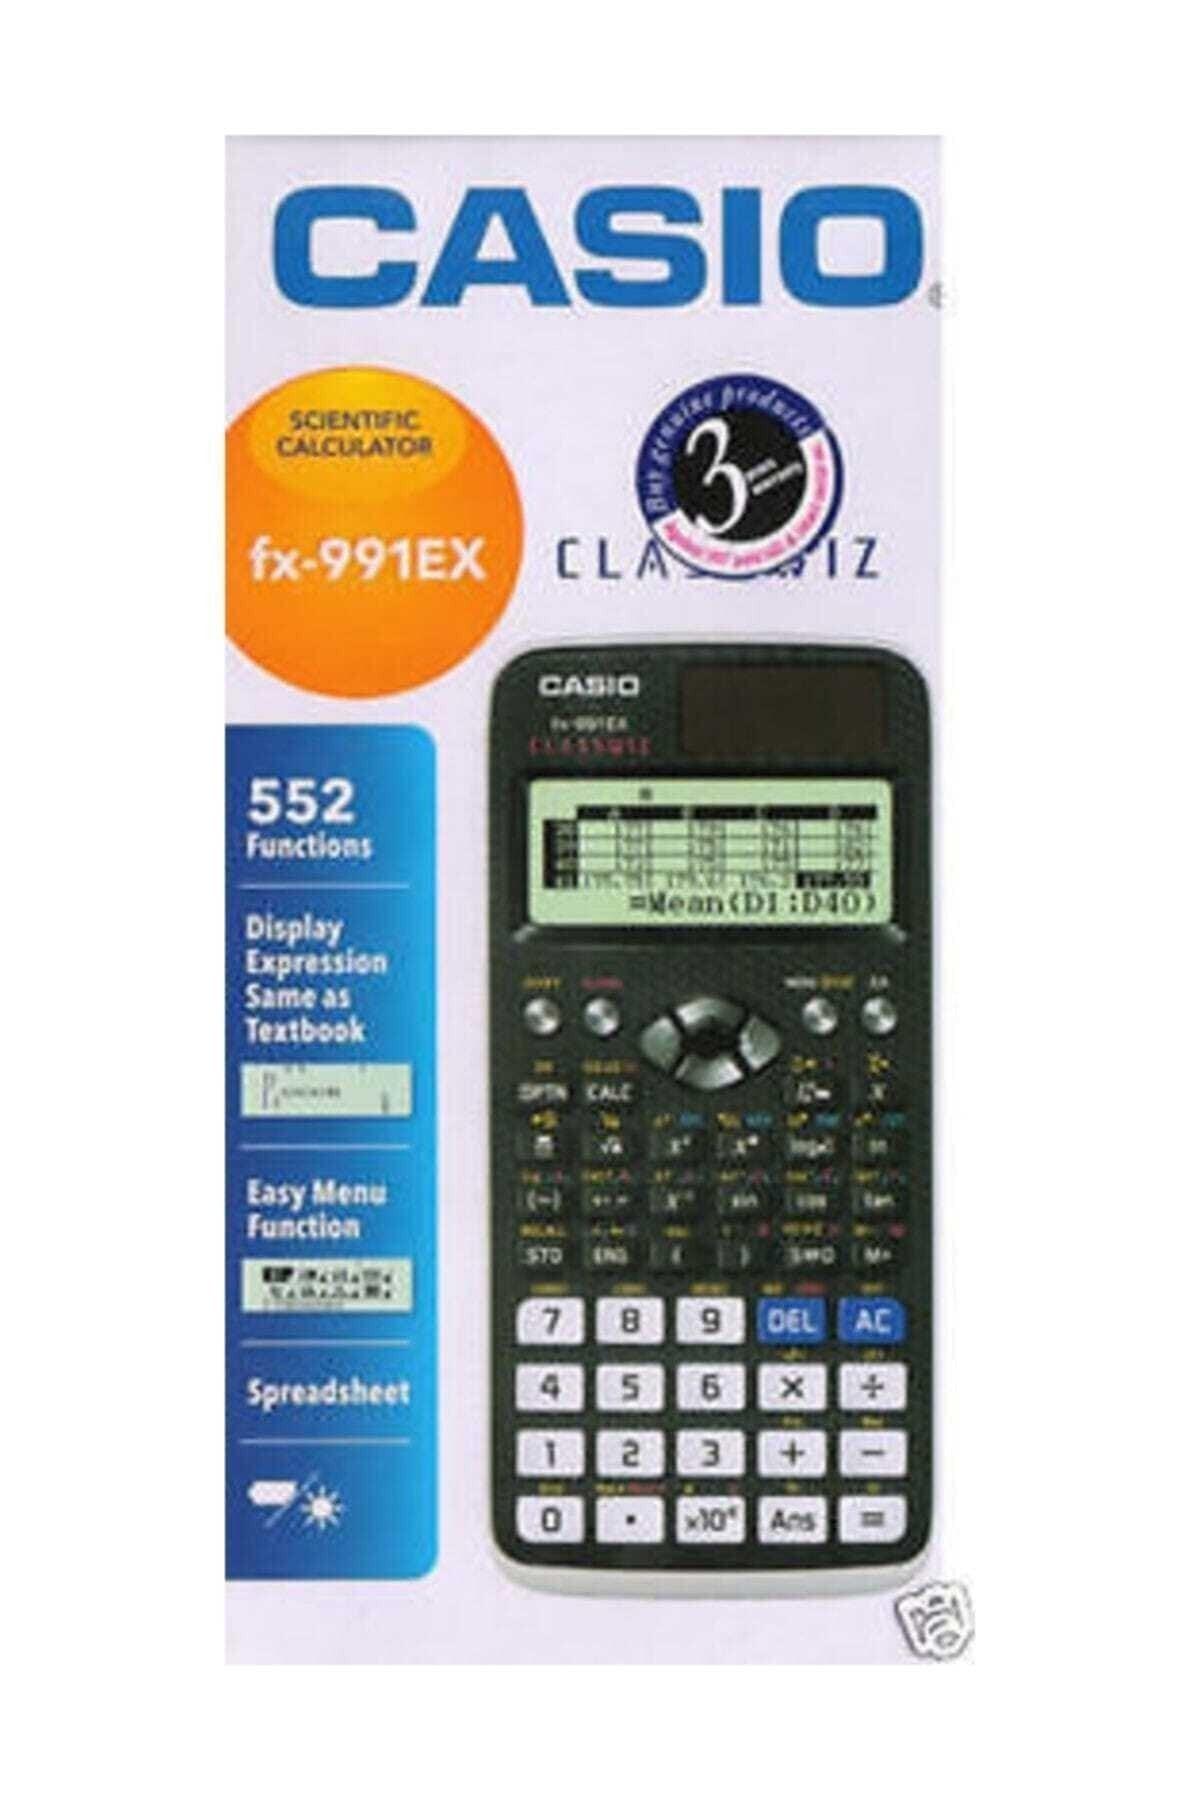 Fx-991ex 552 Function Scientific Calculator